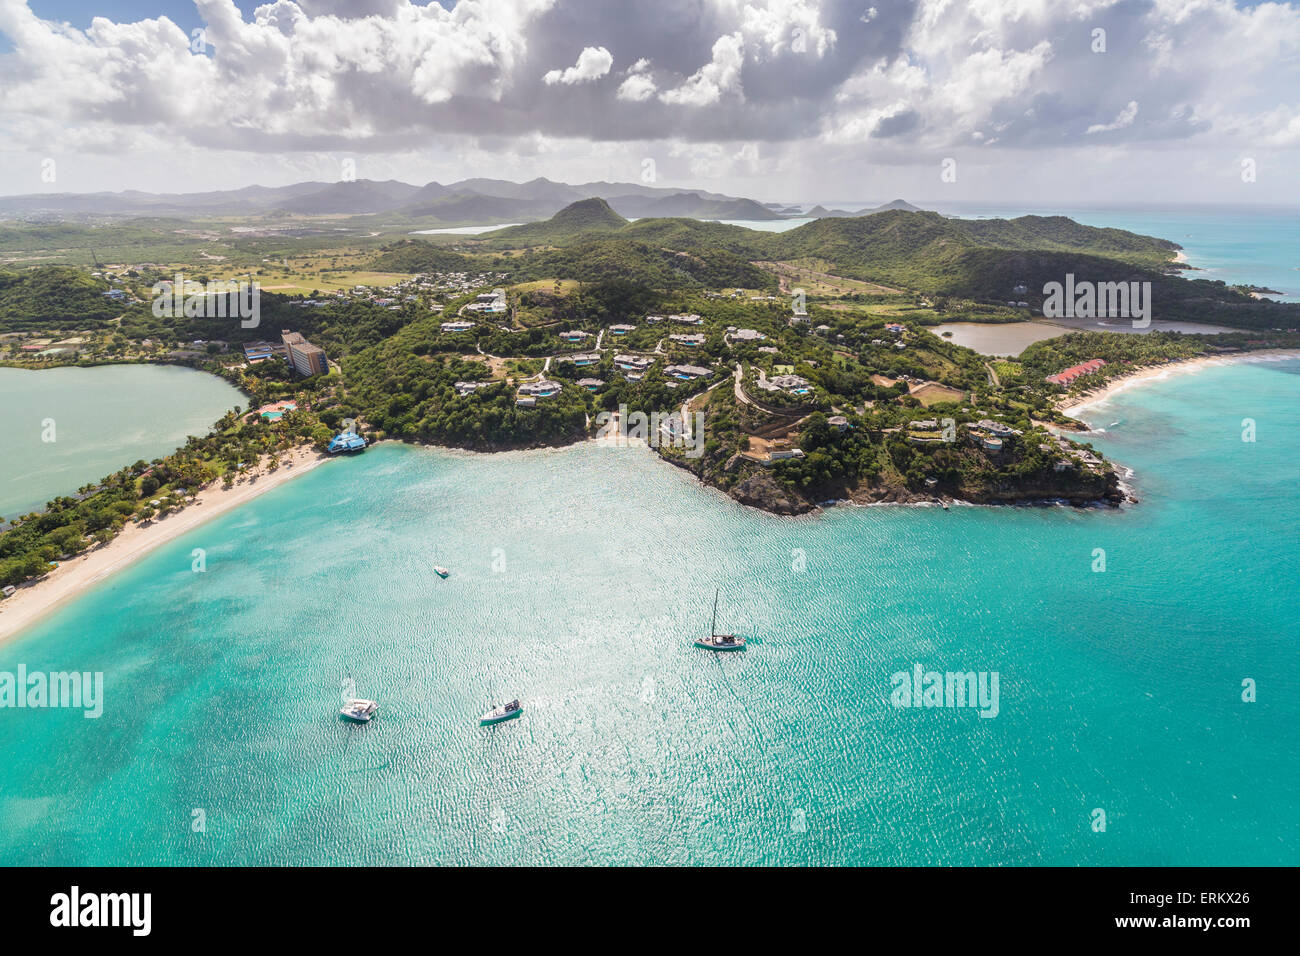 Vue aérienne de voiliers amarrés à quelques mètres de la côte d'Antigua, les îles sous le vent, Antilles, Caraïbes, Amérique Centrale Banque D'Images